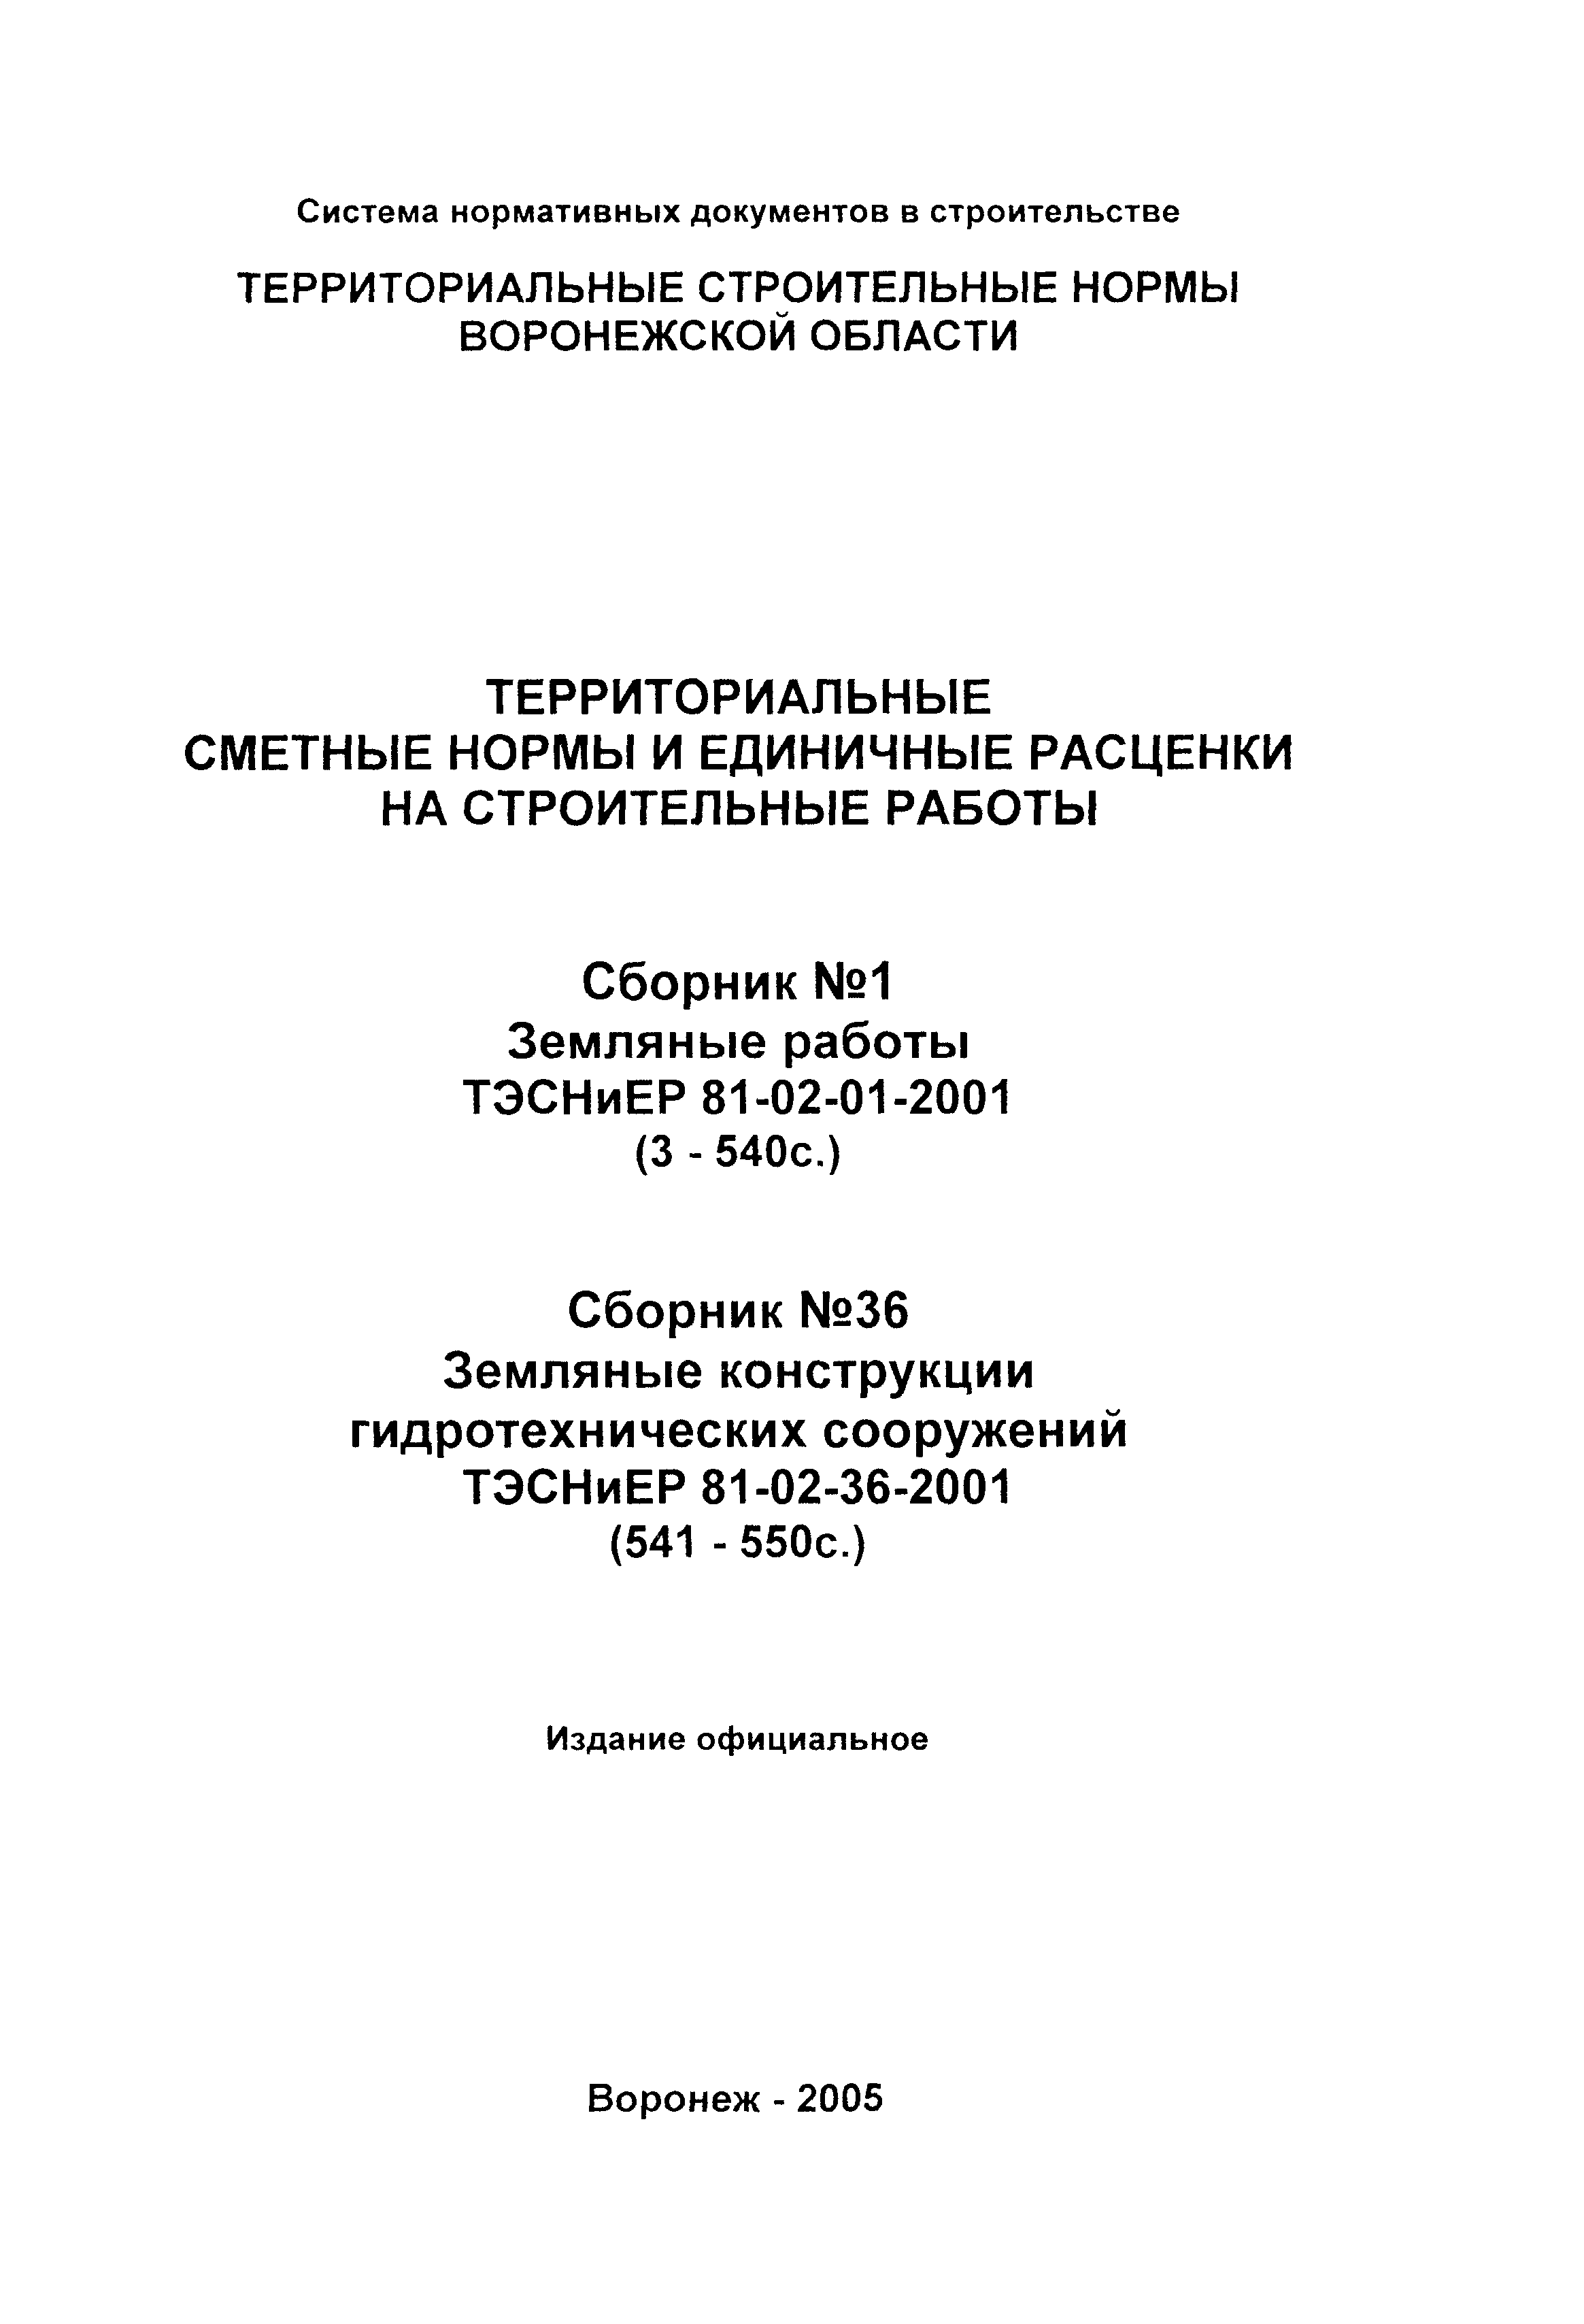 ТЭСНиЕР Воронежская область 81-02-36-2001